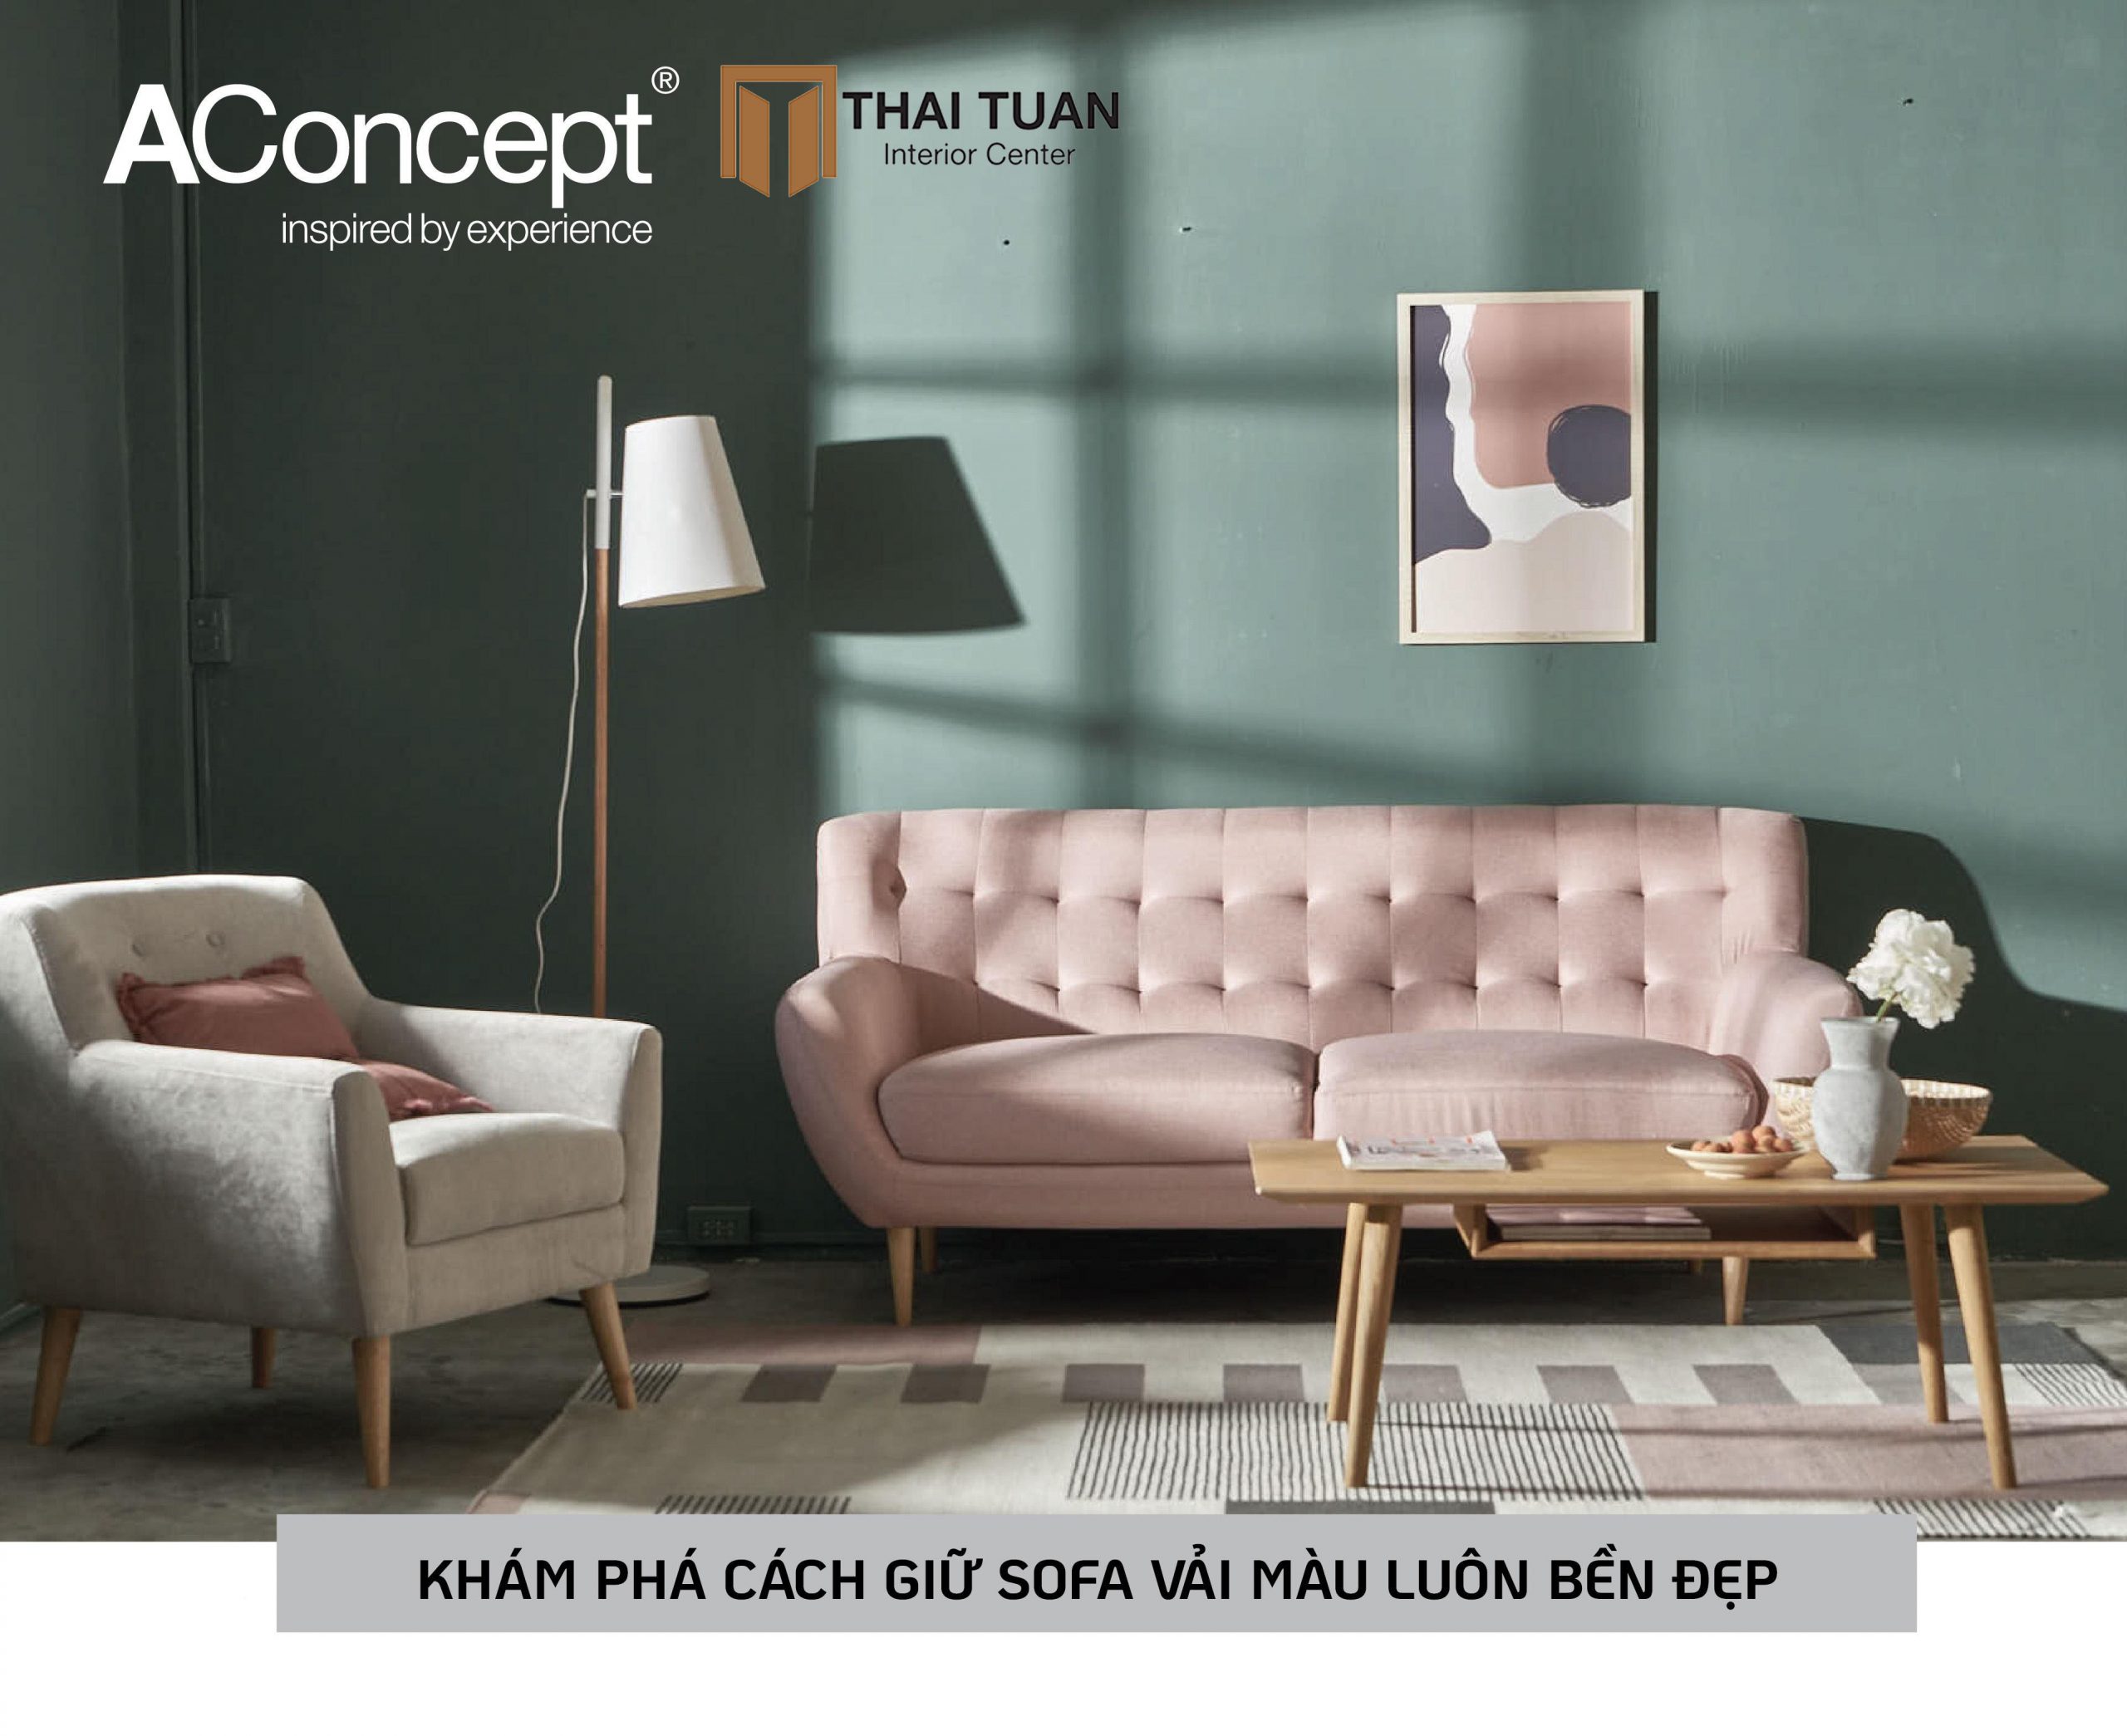 Cách vệ sinh sofa vải - cách giữ sofa vải màu luôn bền đẹp